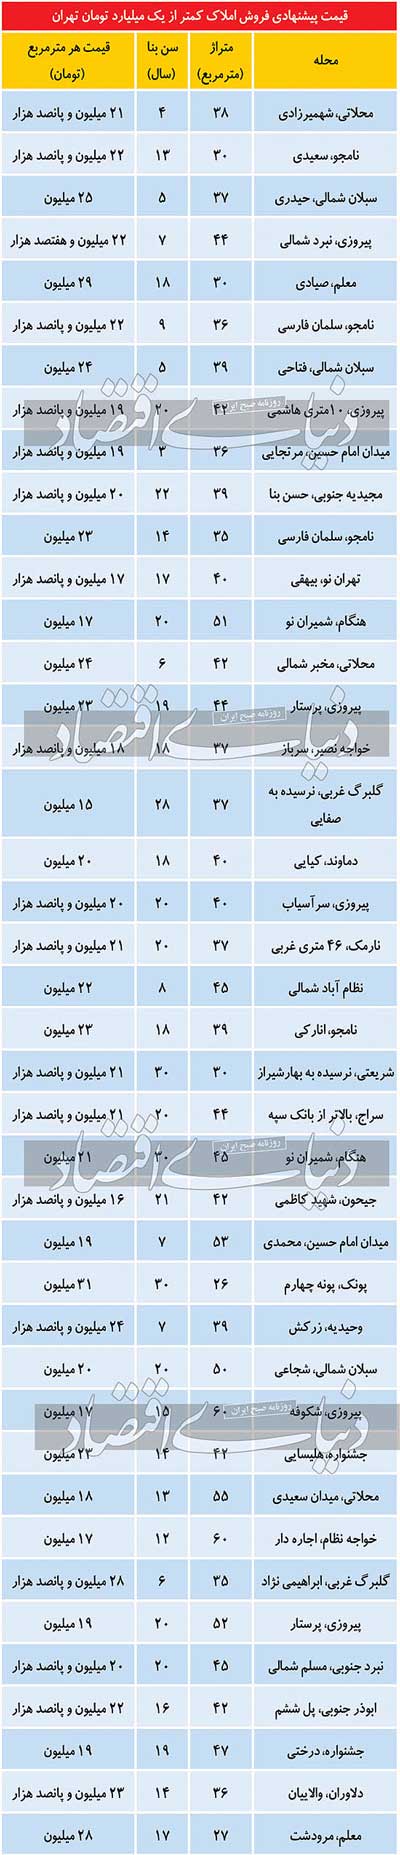 فهرست املاک کمتر از یک میلیارد تومان در تهران